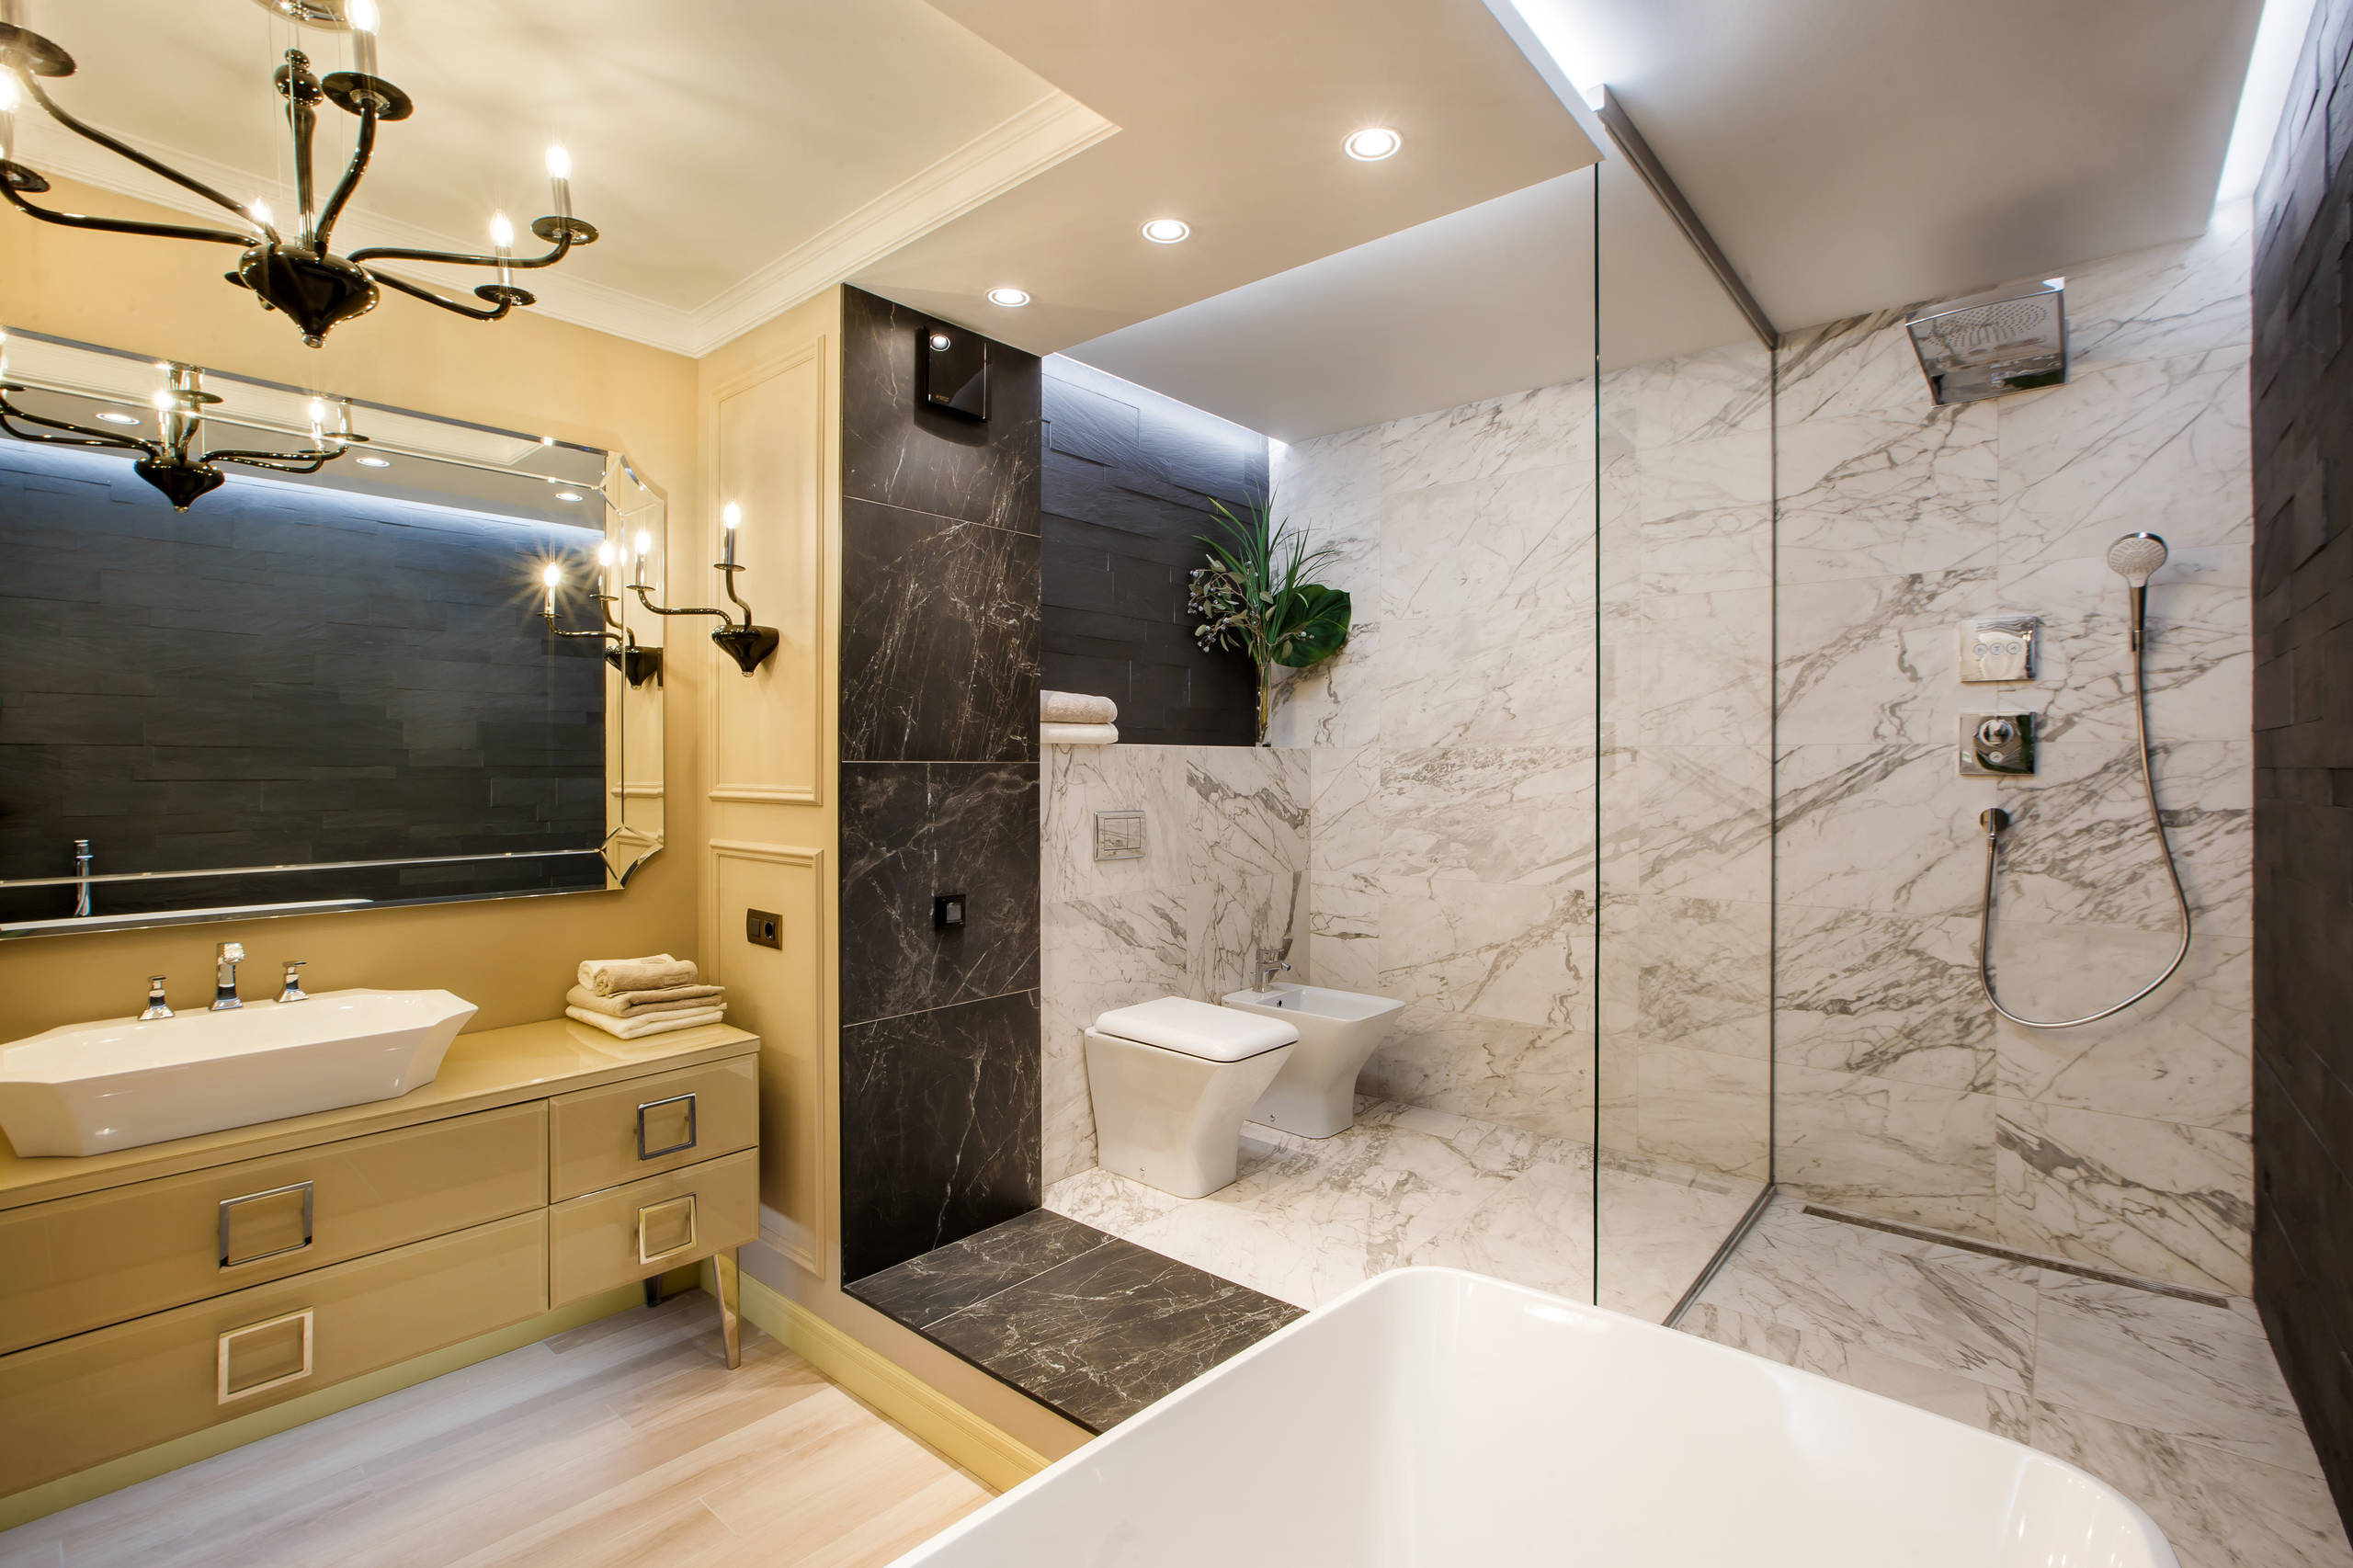 Ванная комната 6 кв.м. (85 фото) - дизайн интерьера, идеи для ремонта и отделки санузла